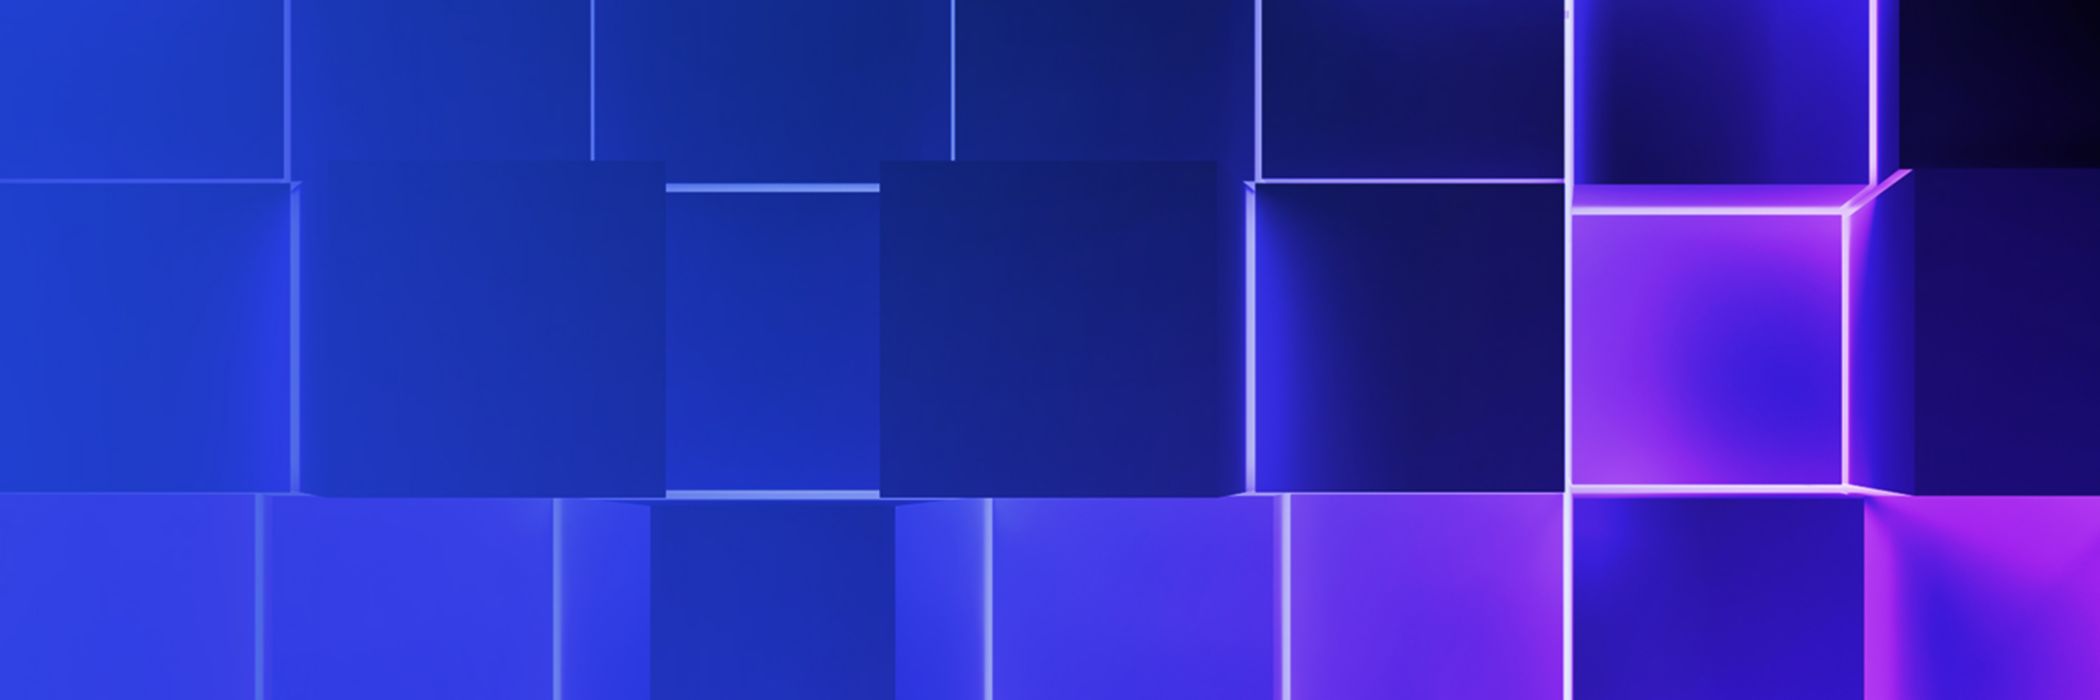 blue-purple-cubes-banner